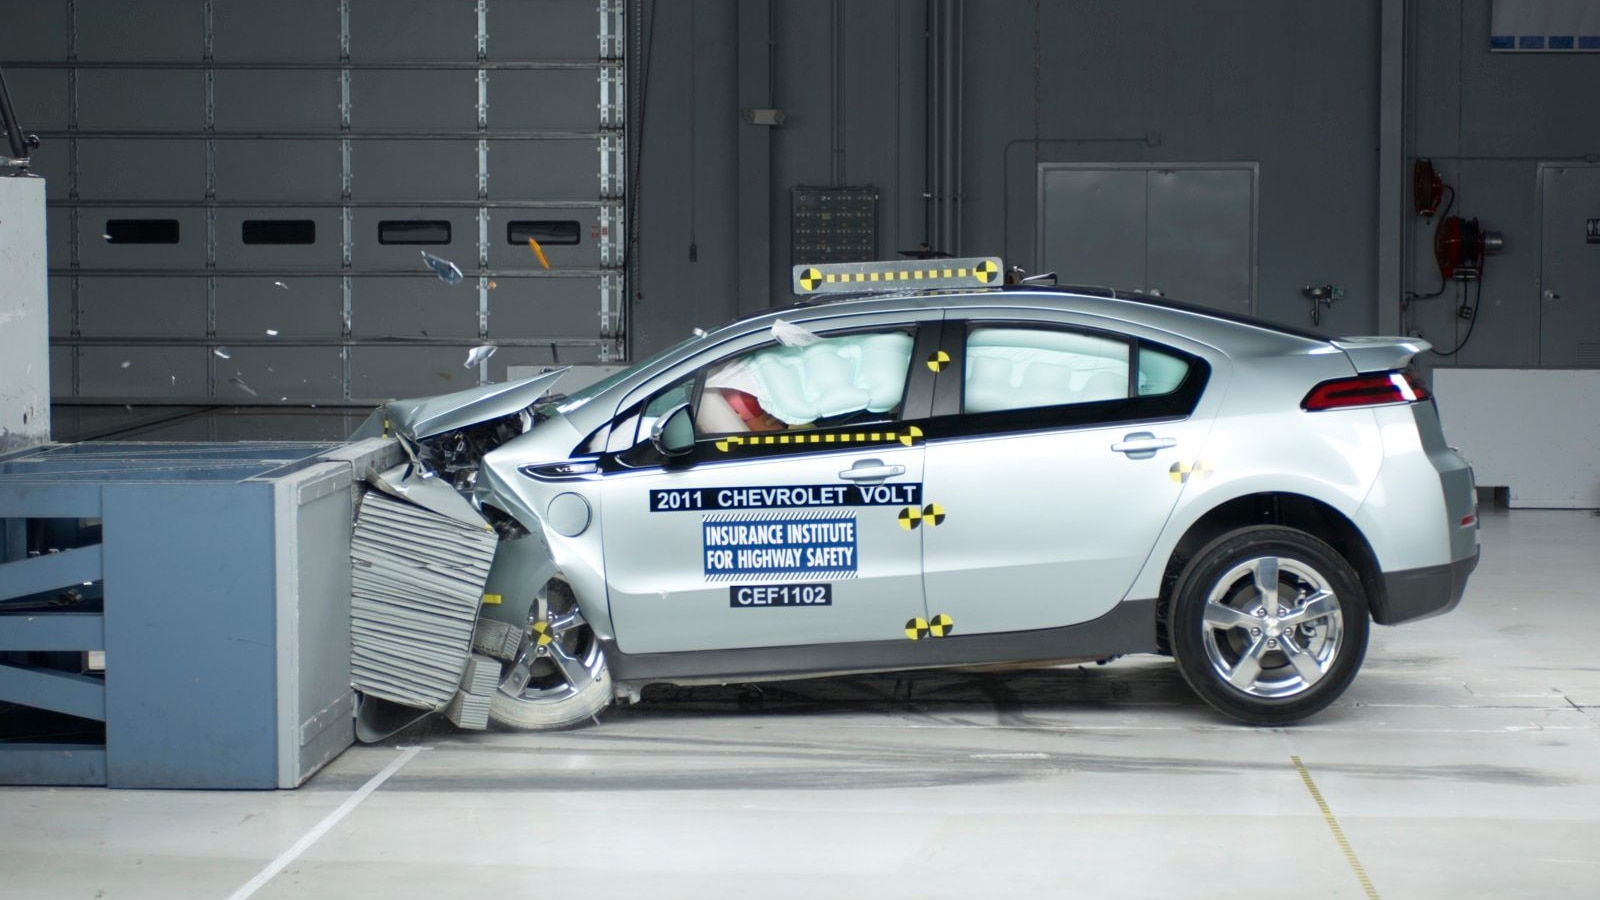 2011 Chevrolet Volt in IIHS crash test